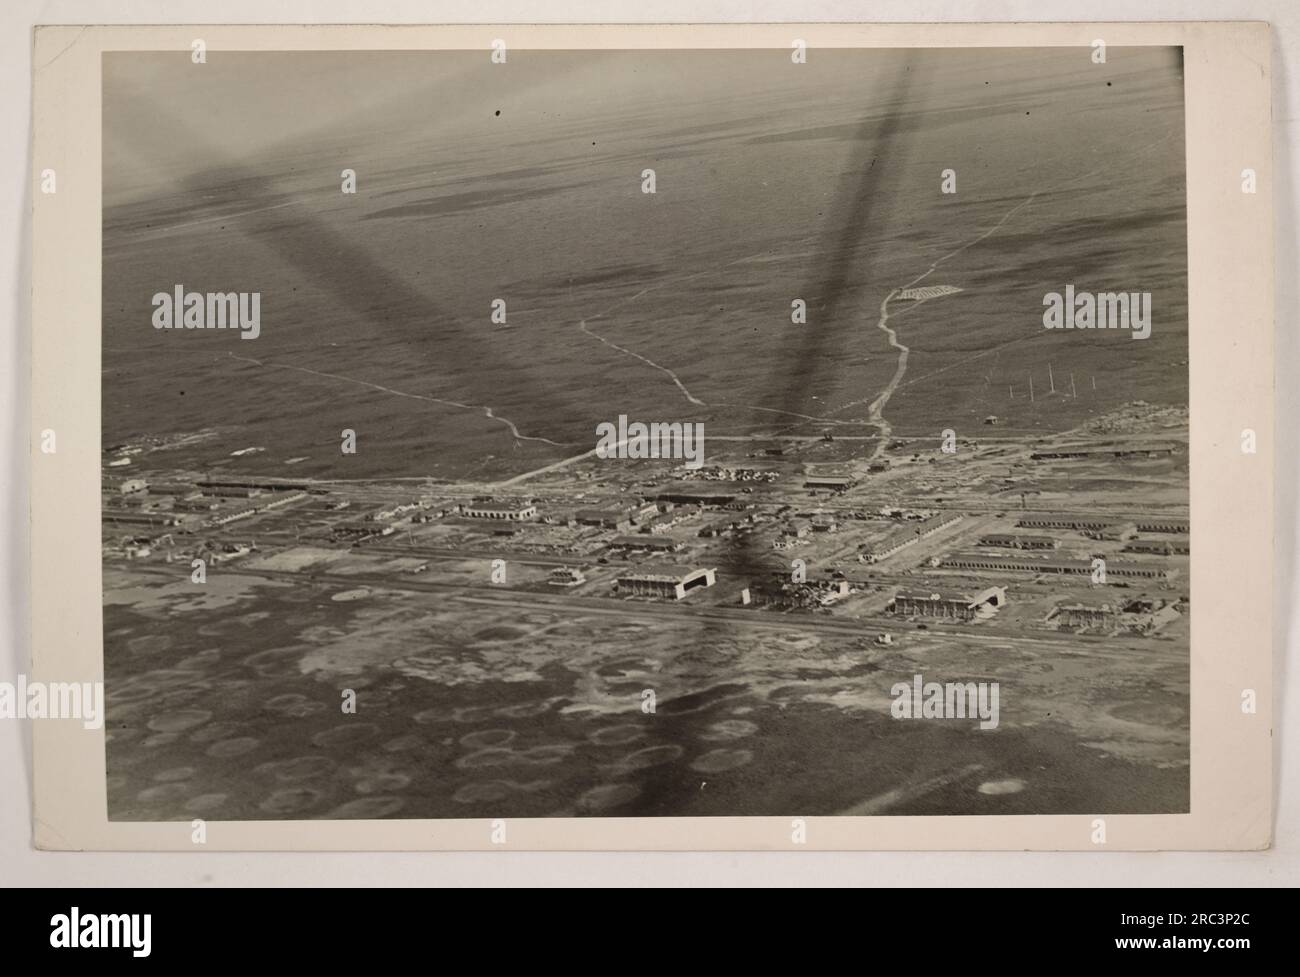 Vista aerea del Gerstner Field a Lake Charles, Louisiana, dopo l'uragano che si è verificato il 6 agosto 1918. L'immagine è stata scattata a un'altitudine di 600 metri. La devastazione causata dall'uragano può essere vista nella foto. Foto Stock